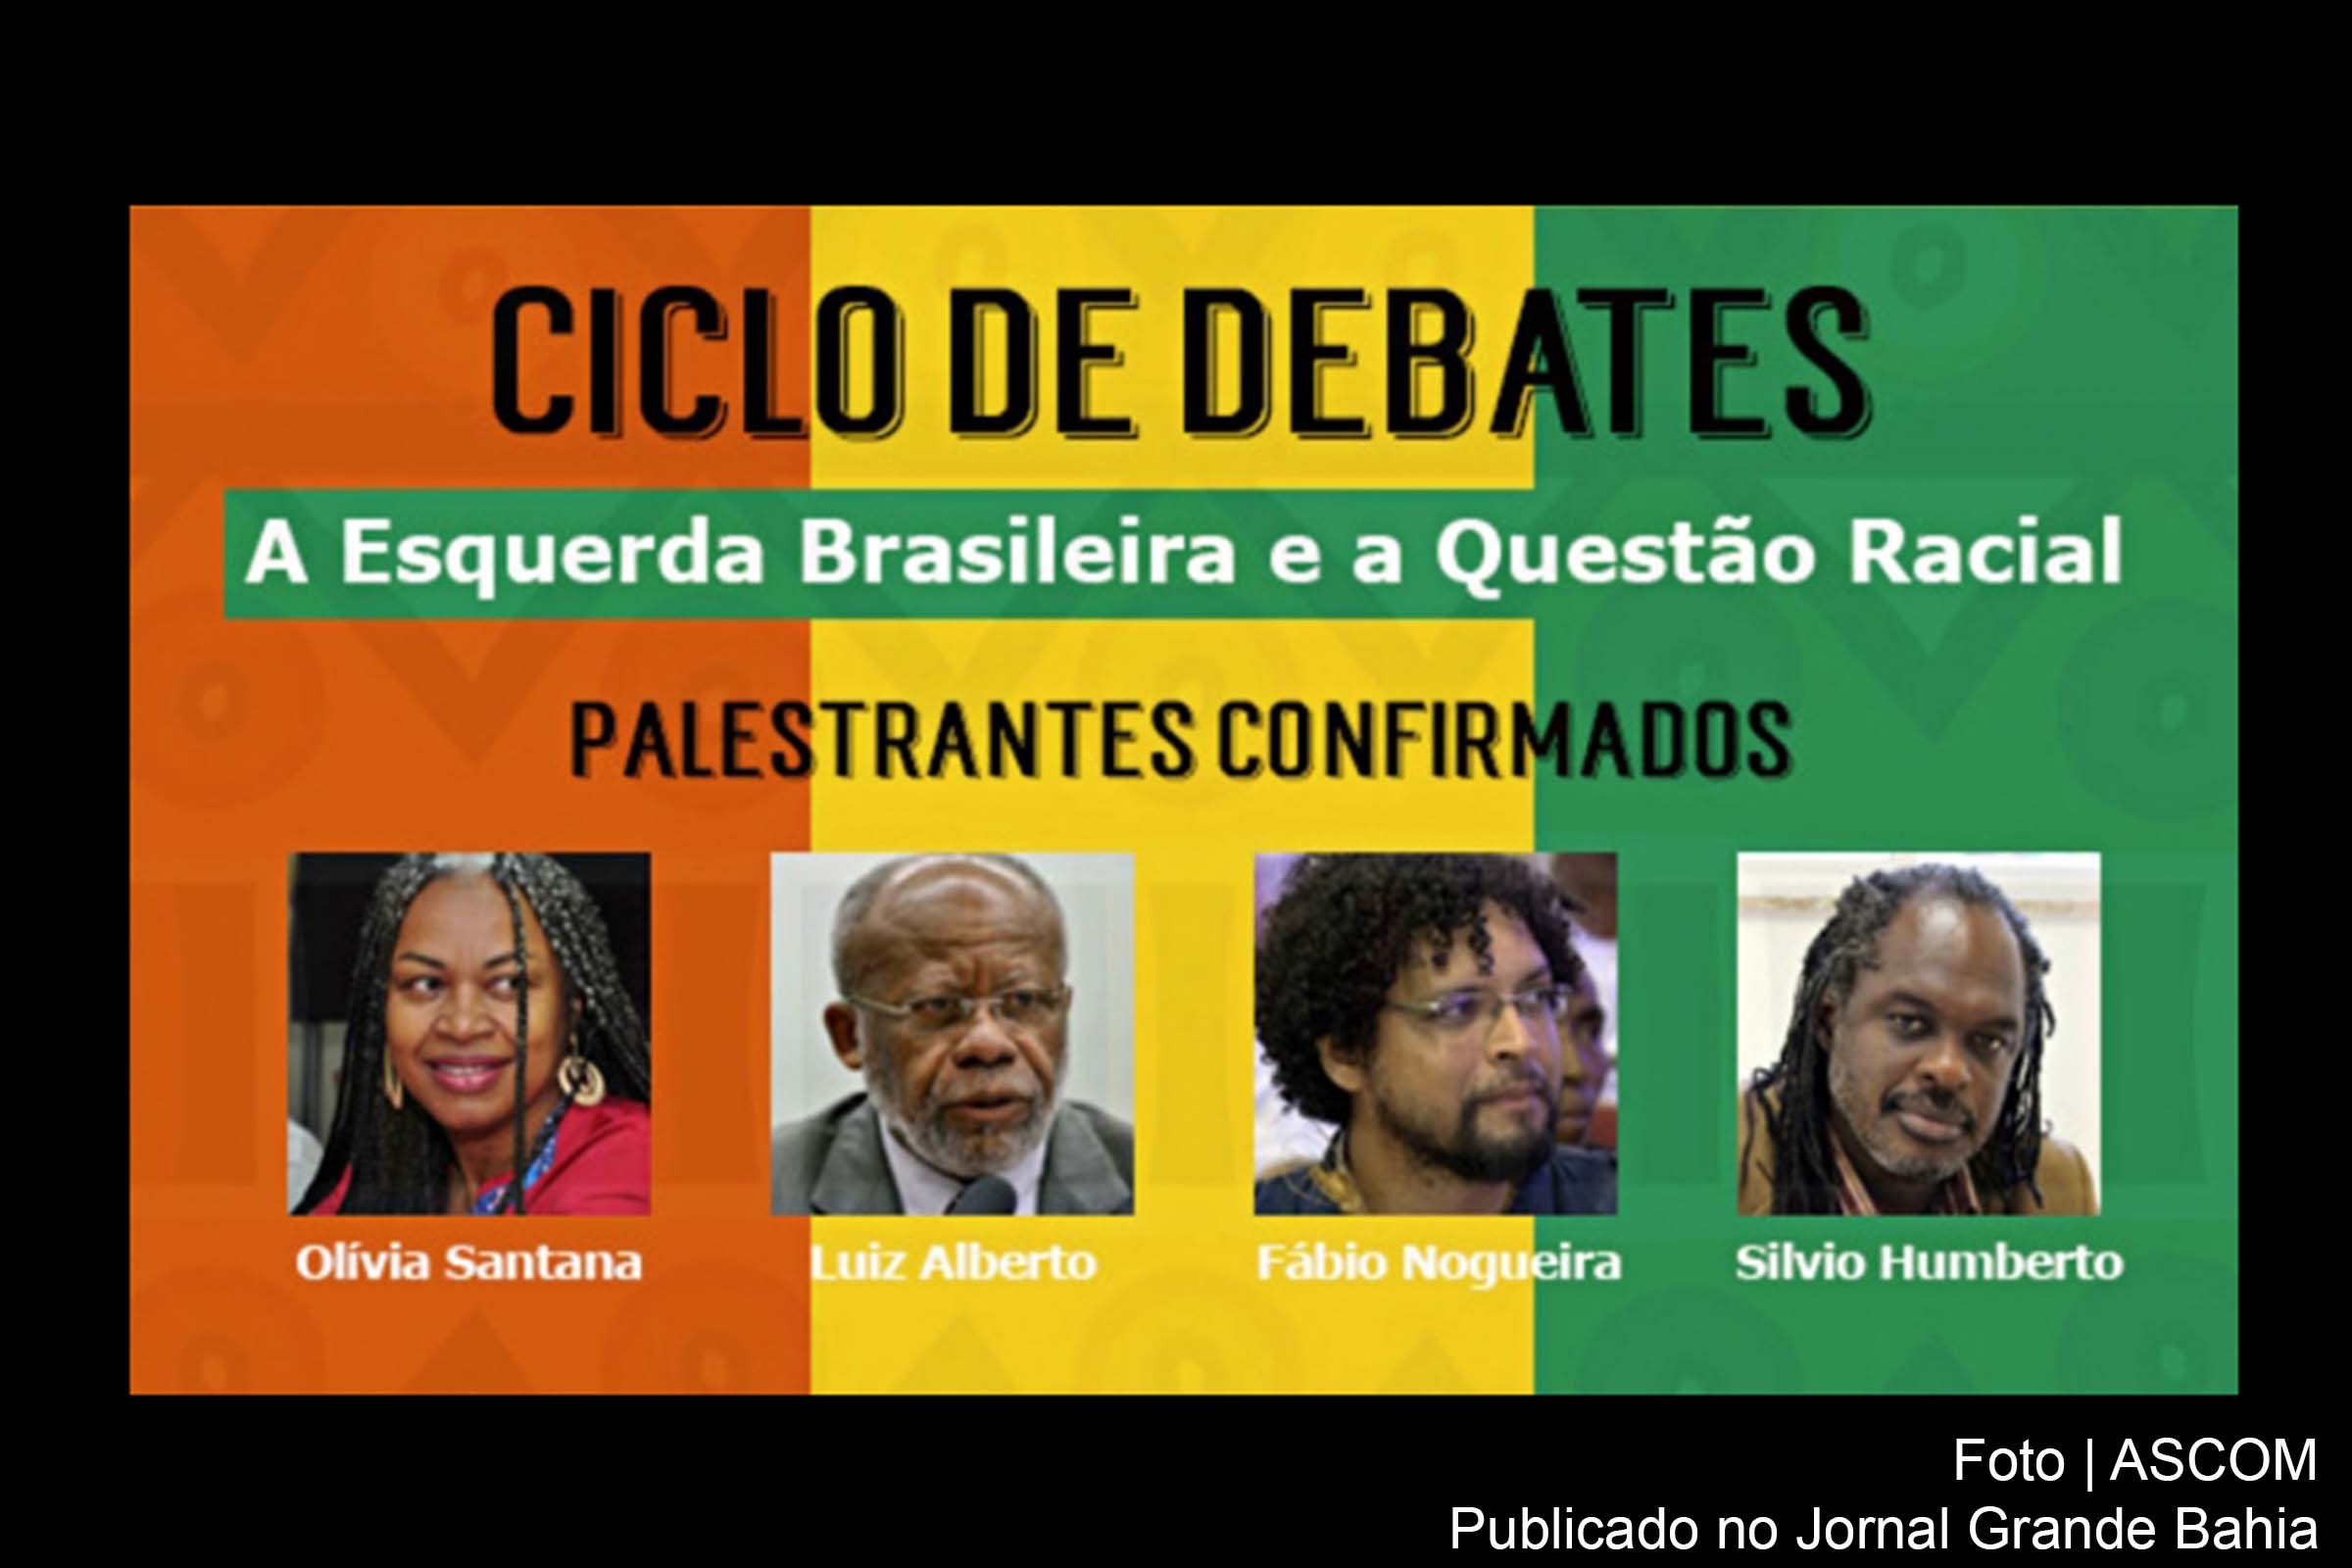 Primeiro encontro ocorre no dia 04 de abril de 2019, às 18:30 horas, no bairro dos Barris, em Salvador.